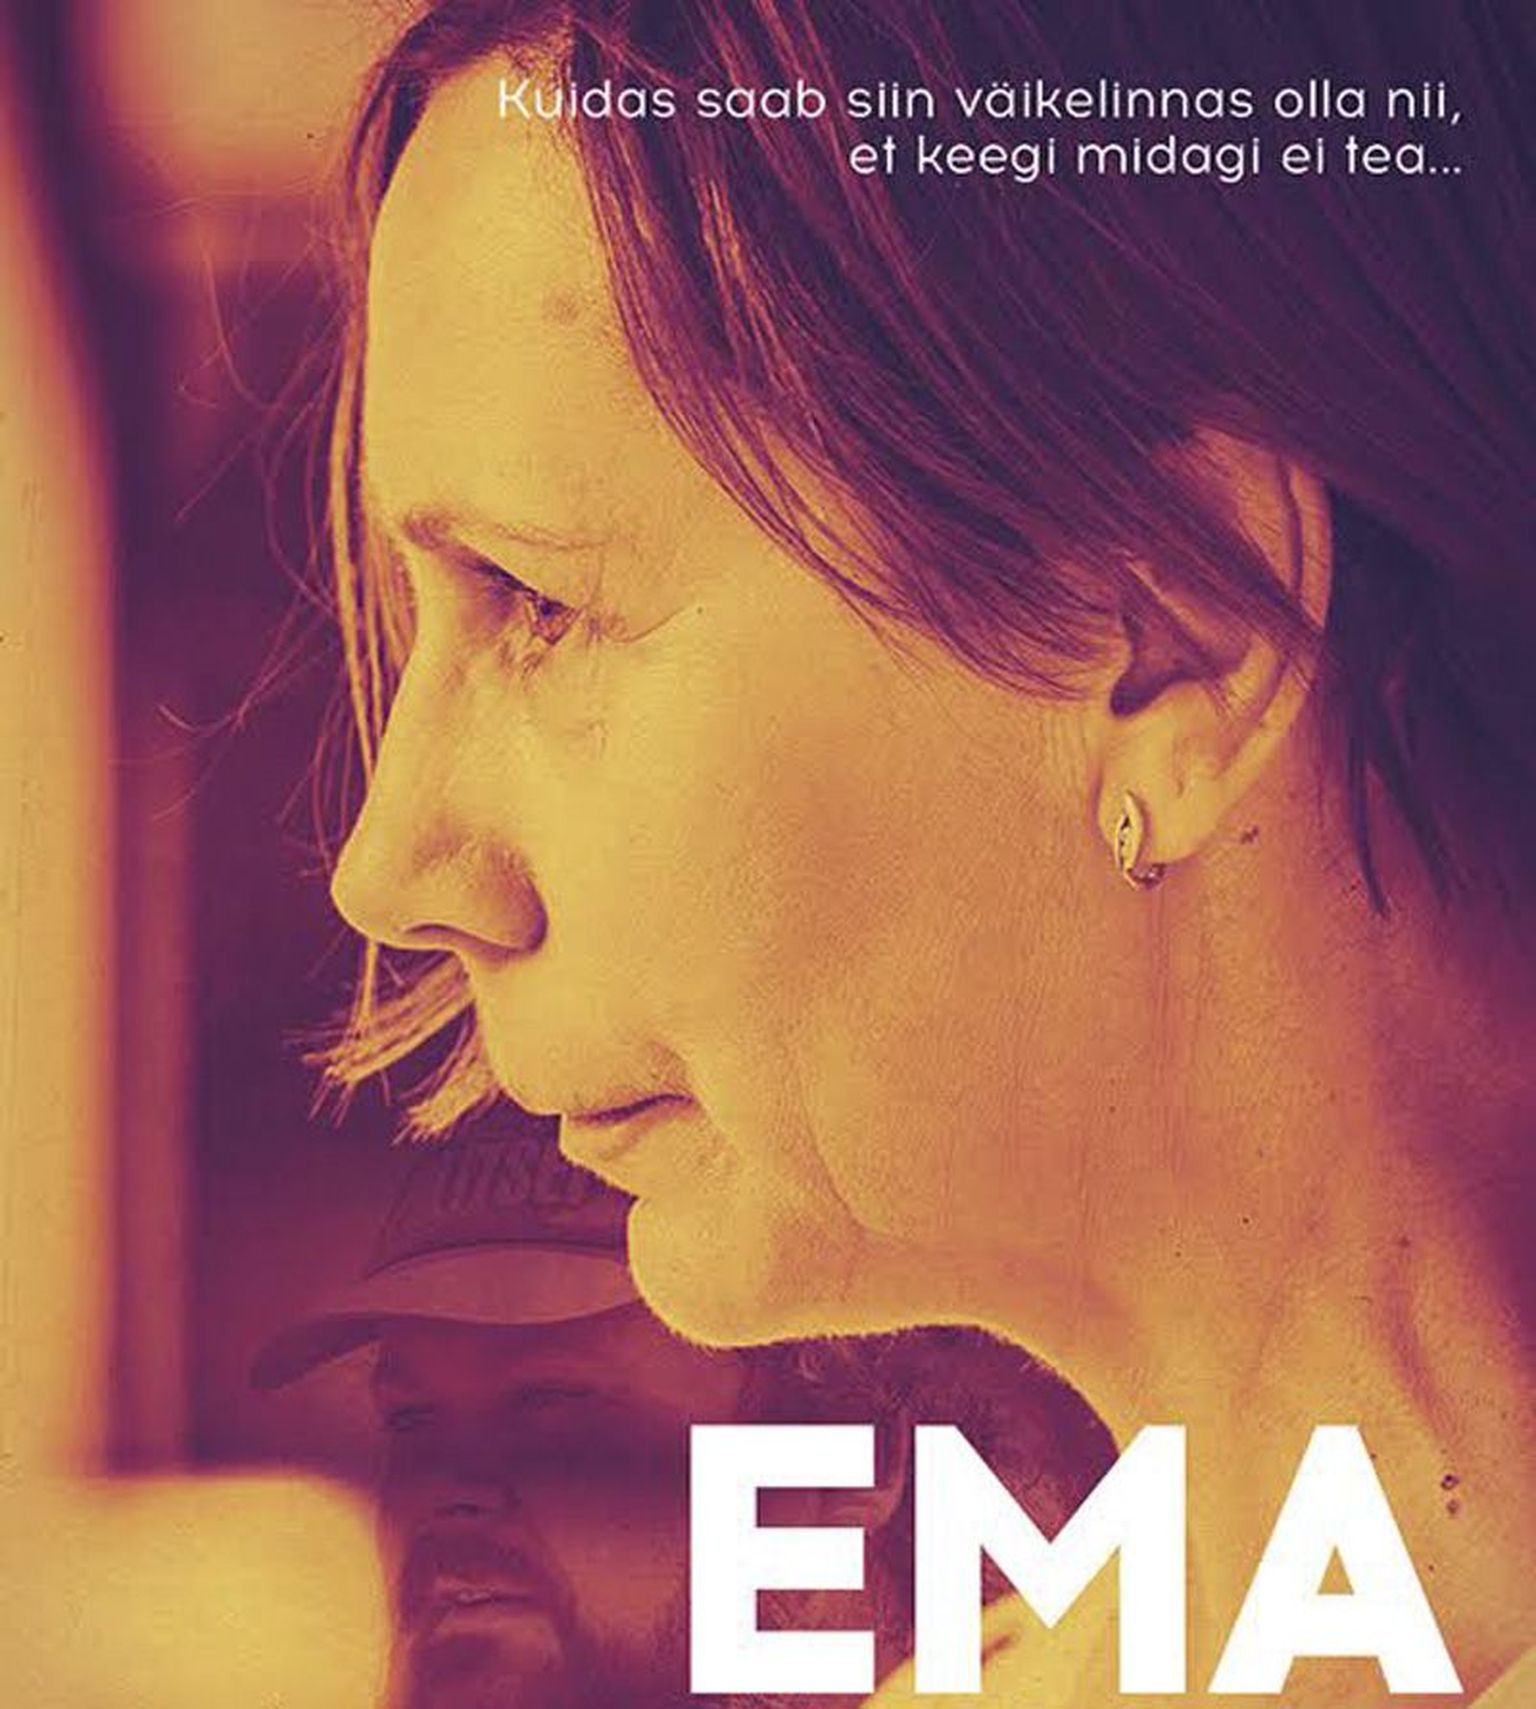 Tiina Mälbergi peaosadebüüt filmis “Ema”.